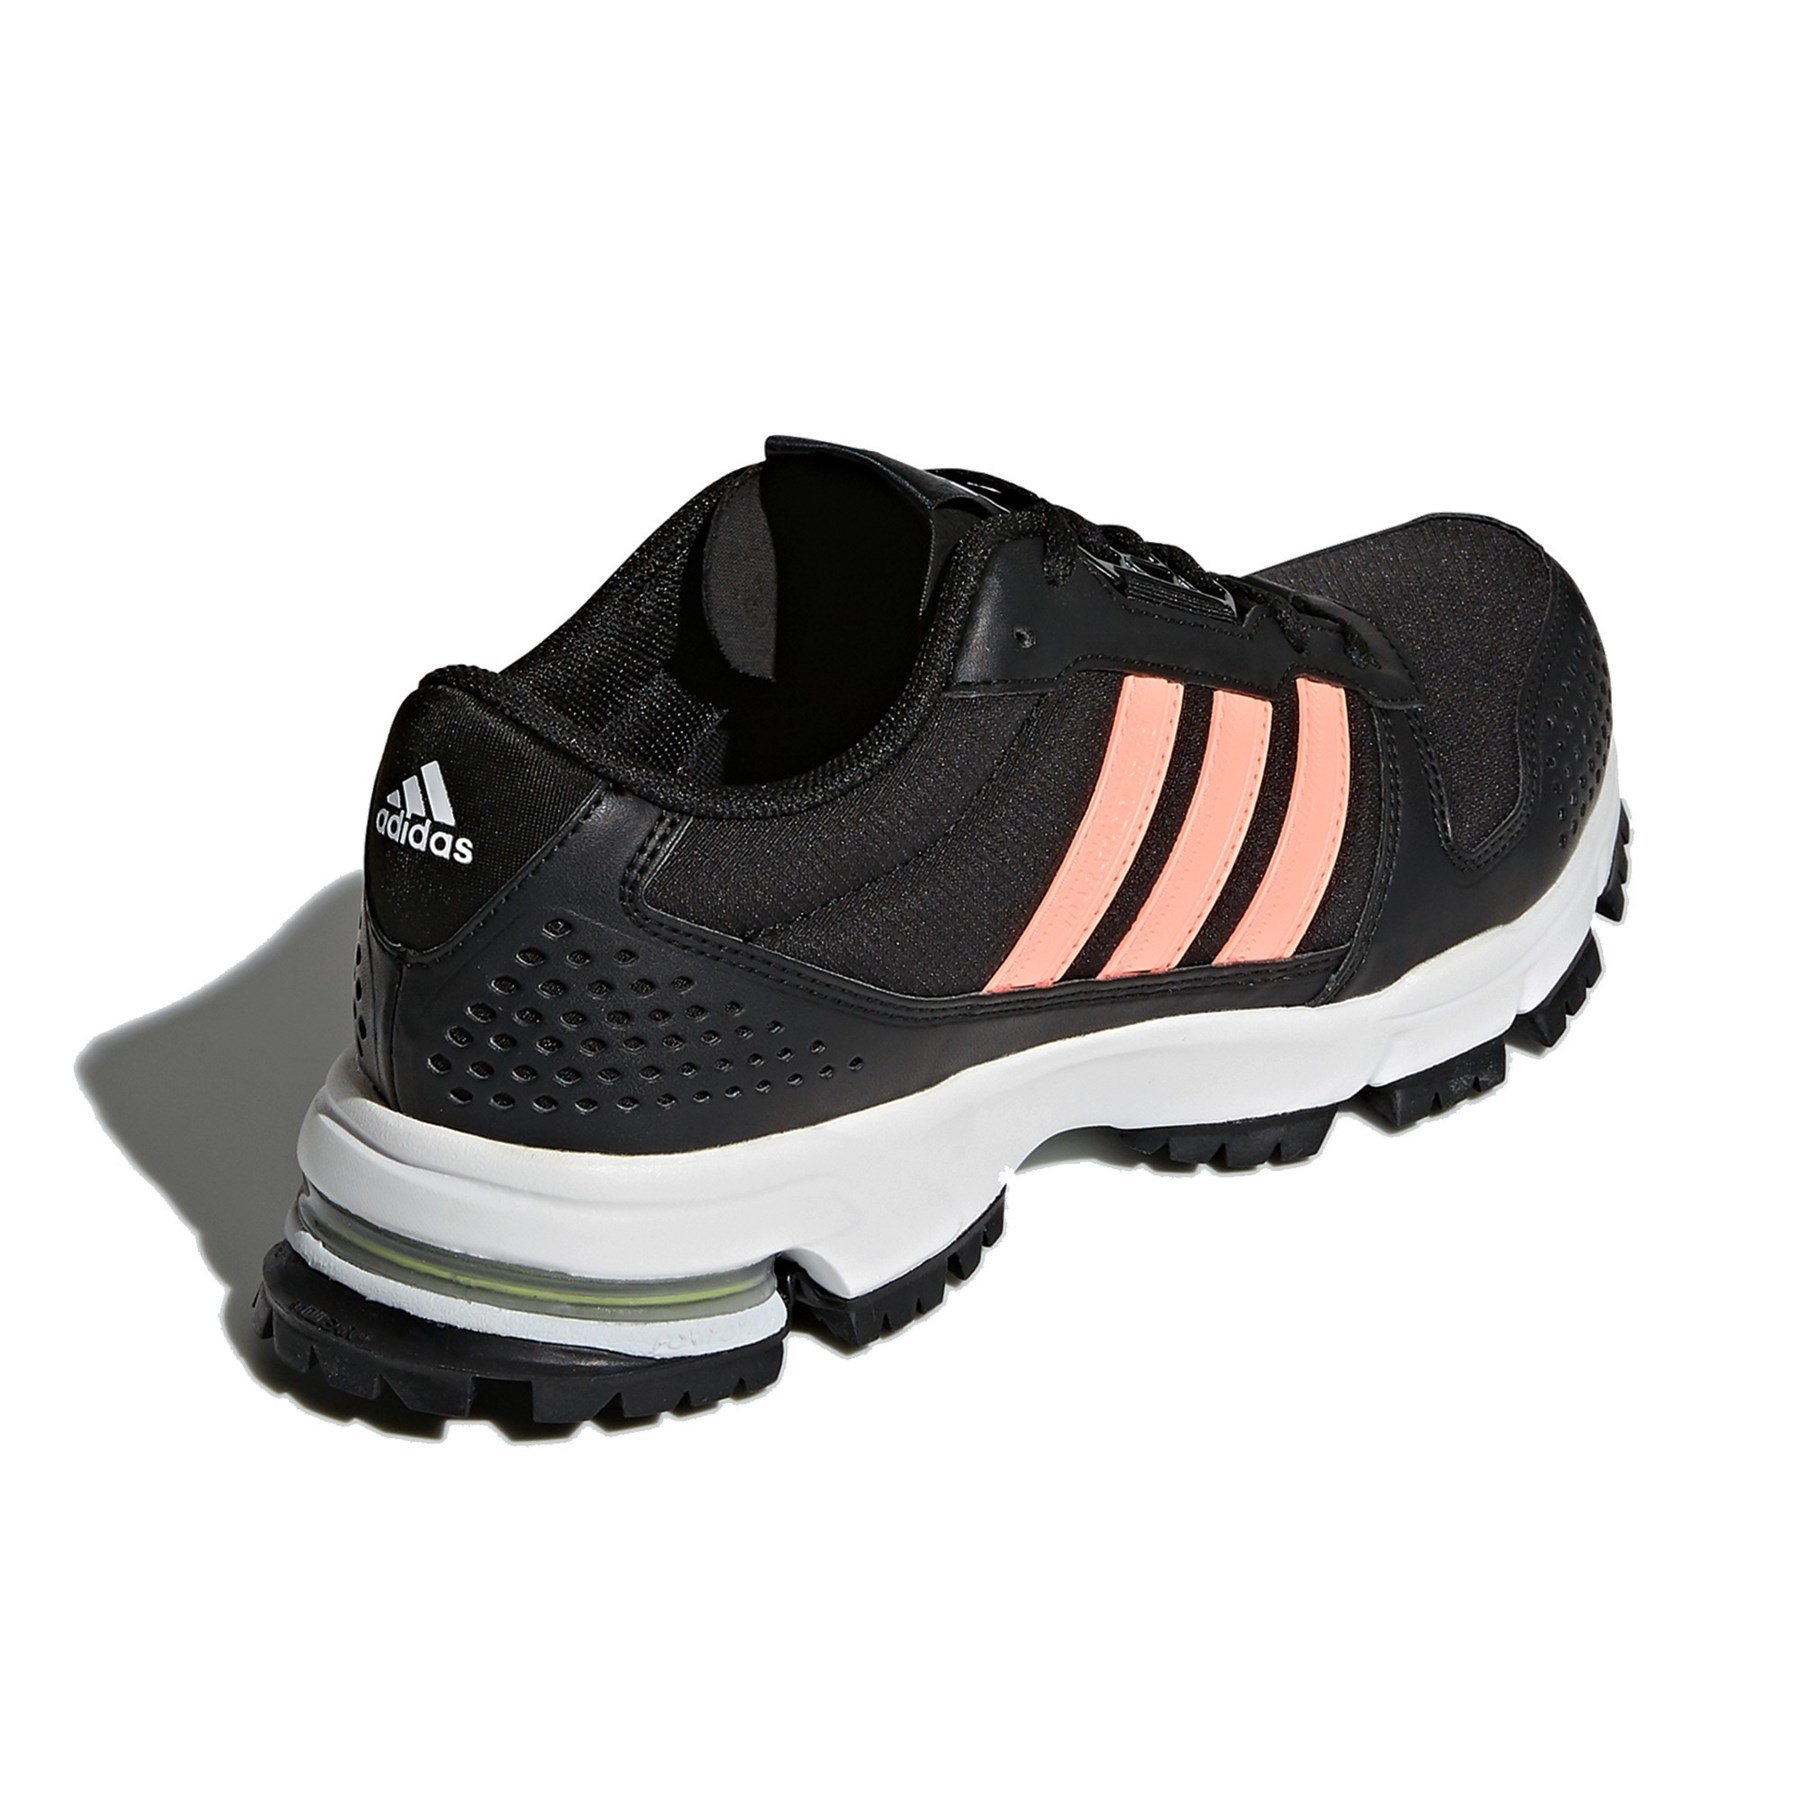 Adidas Kadın Koşu Yürüyüş Ayakkabısı CM8337 marathon 10 tr w